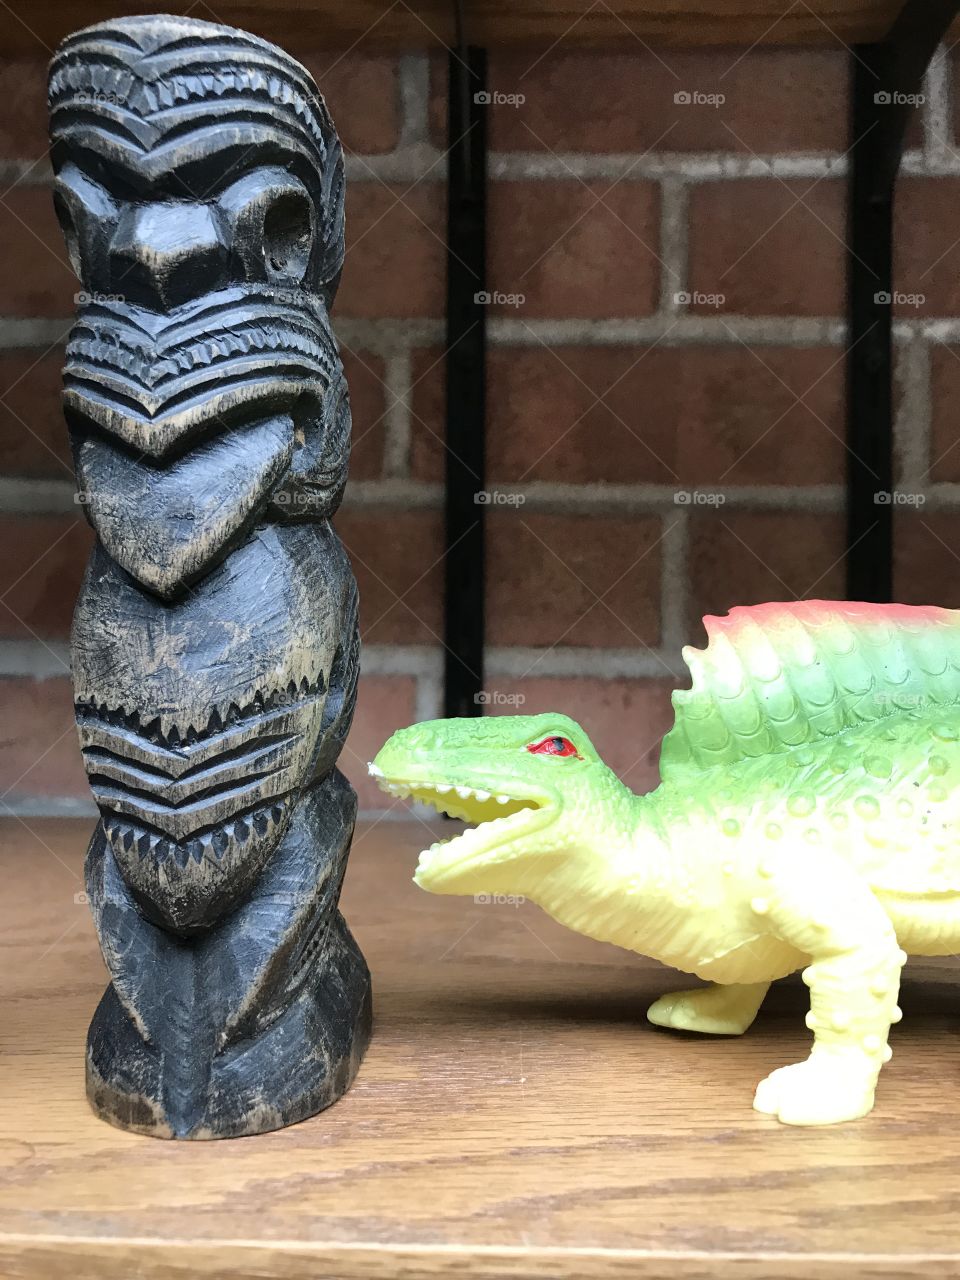 Dinosaur conversation with a Maori tiki